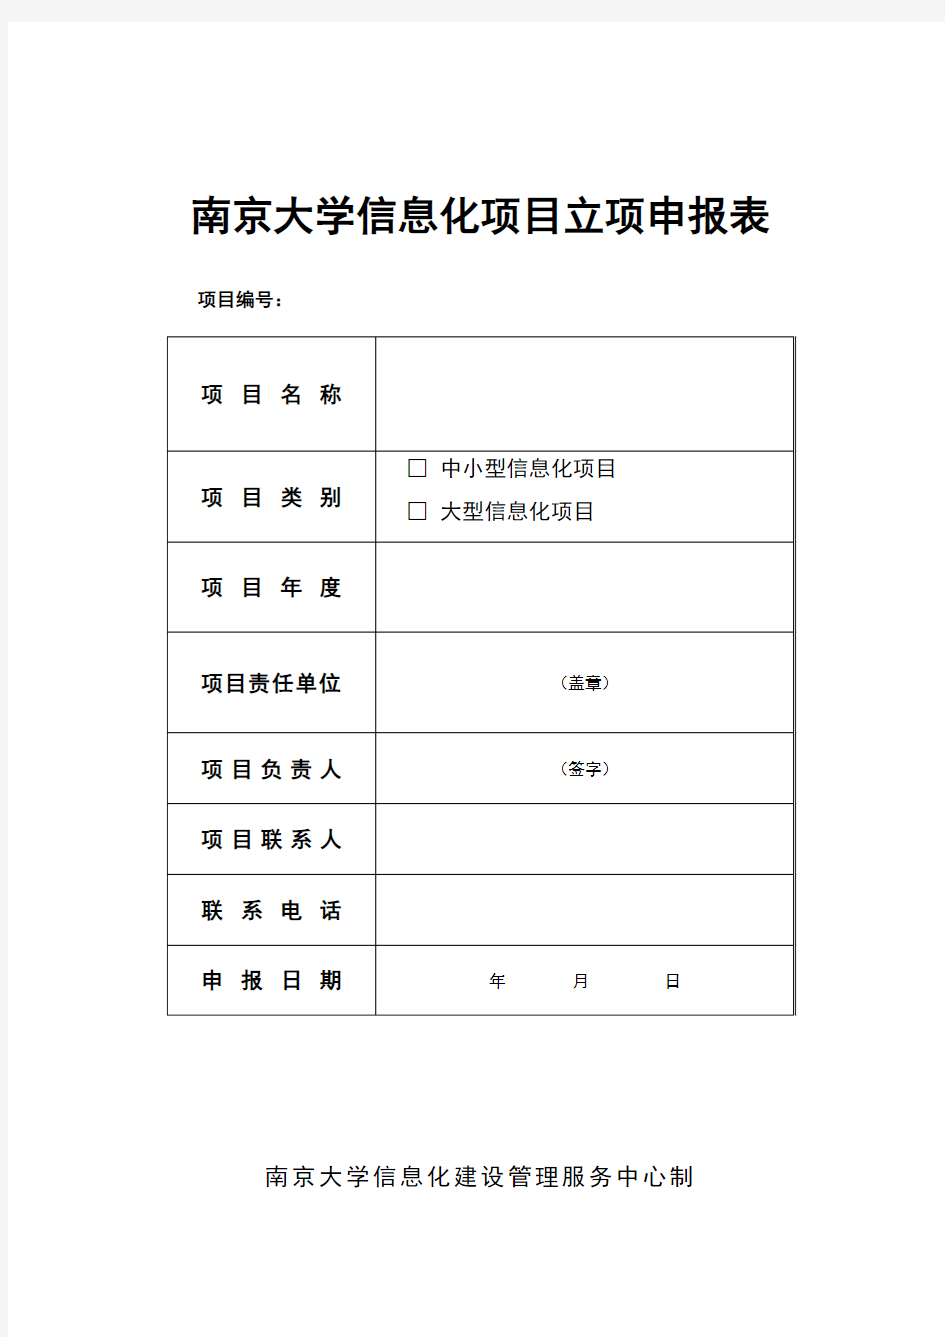 南京大学信息化项目立项申报表